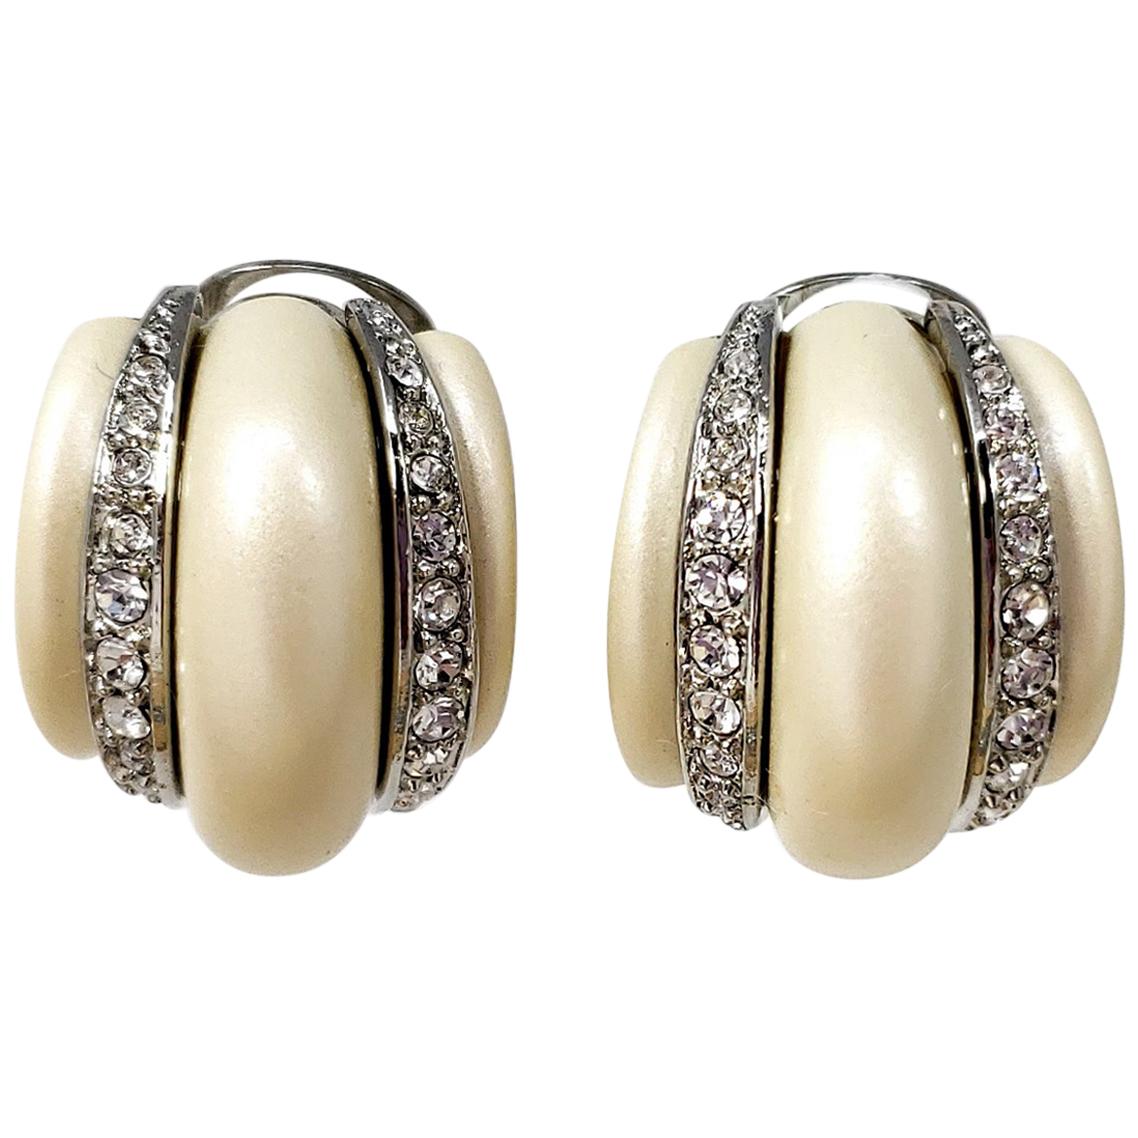 KJL Kenneth Jay Lane Faux Pearl Crystal Embellished Clip on Earrings in Silver